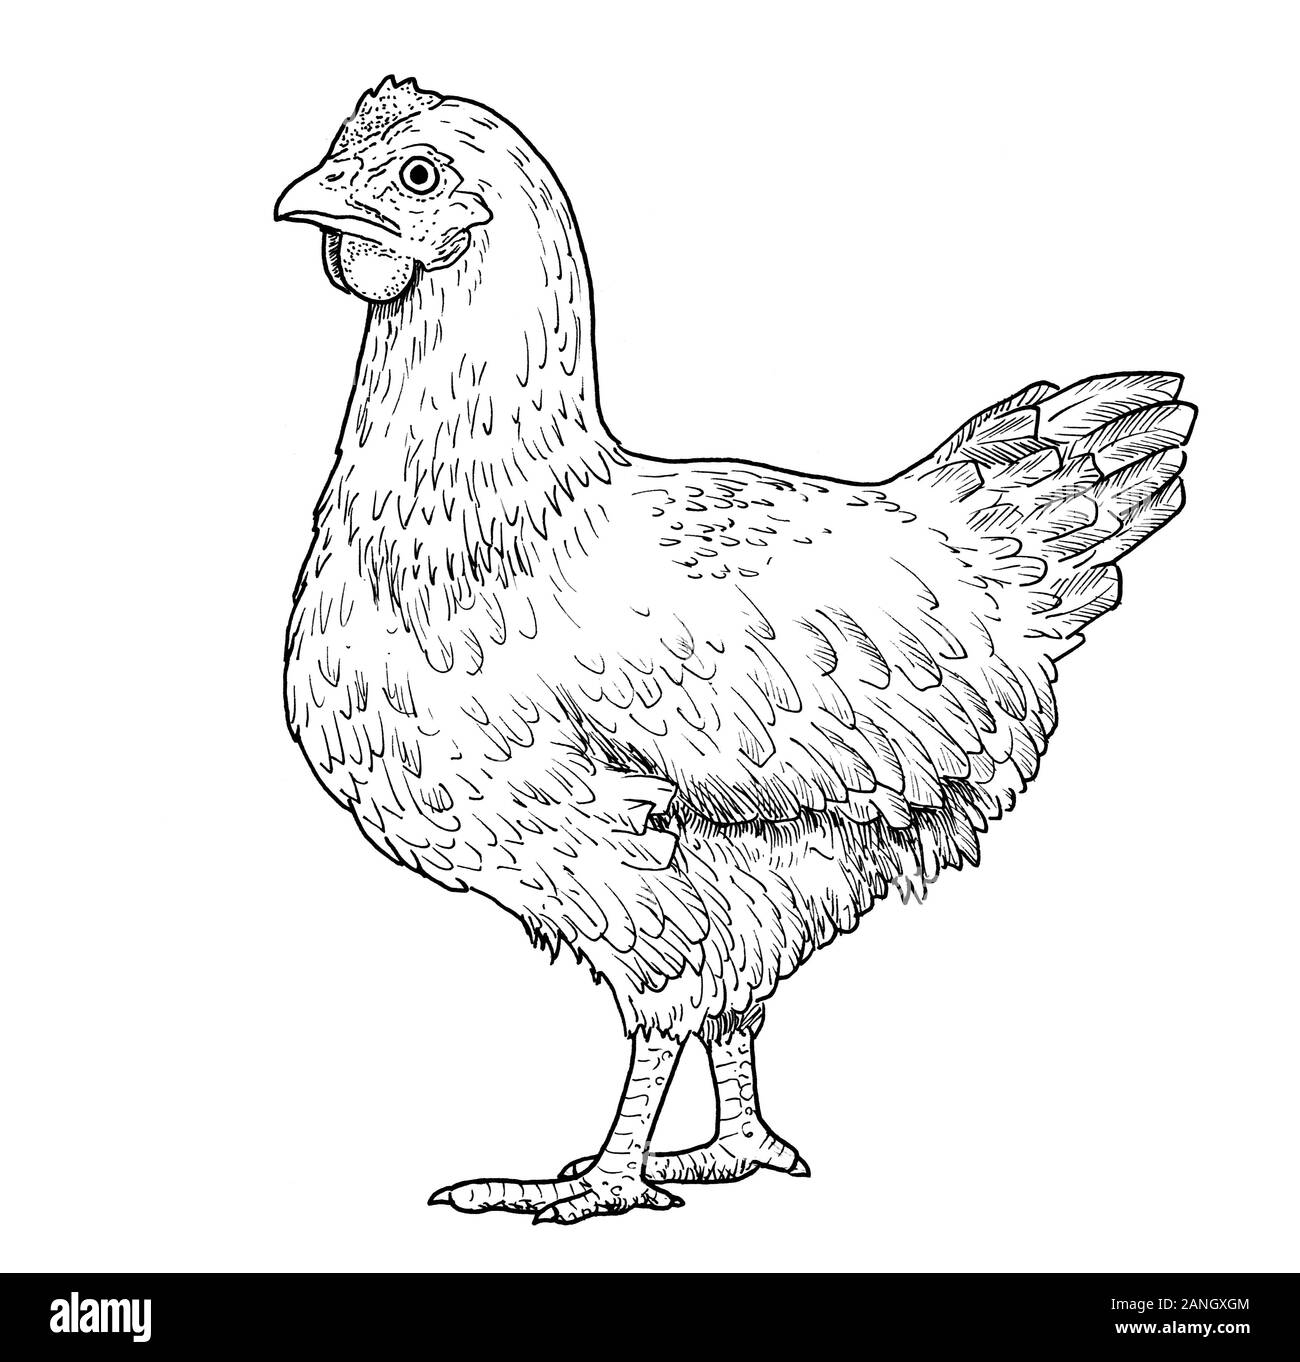 Zeichnung der Henne. Skizze der erwachsenen weiblichen Huhn, schwarz und weiß Abbildung: Stockfoto